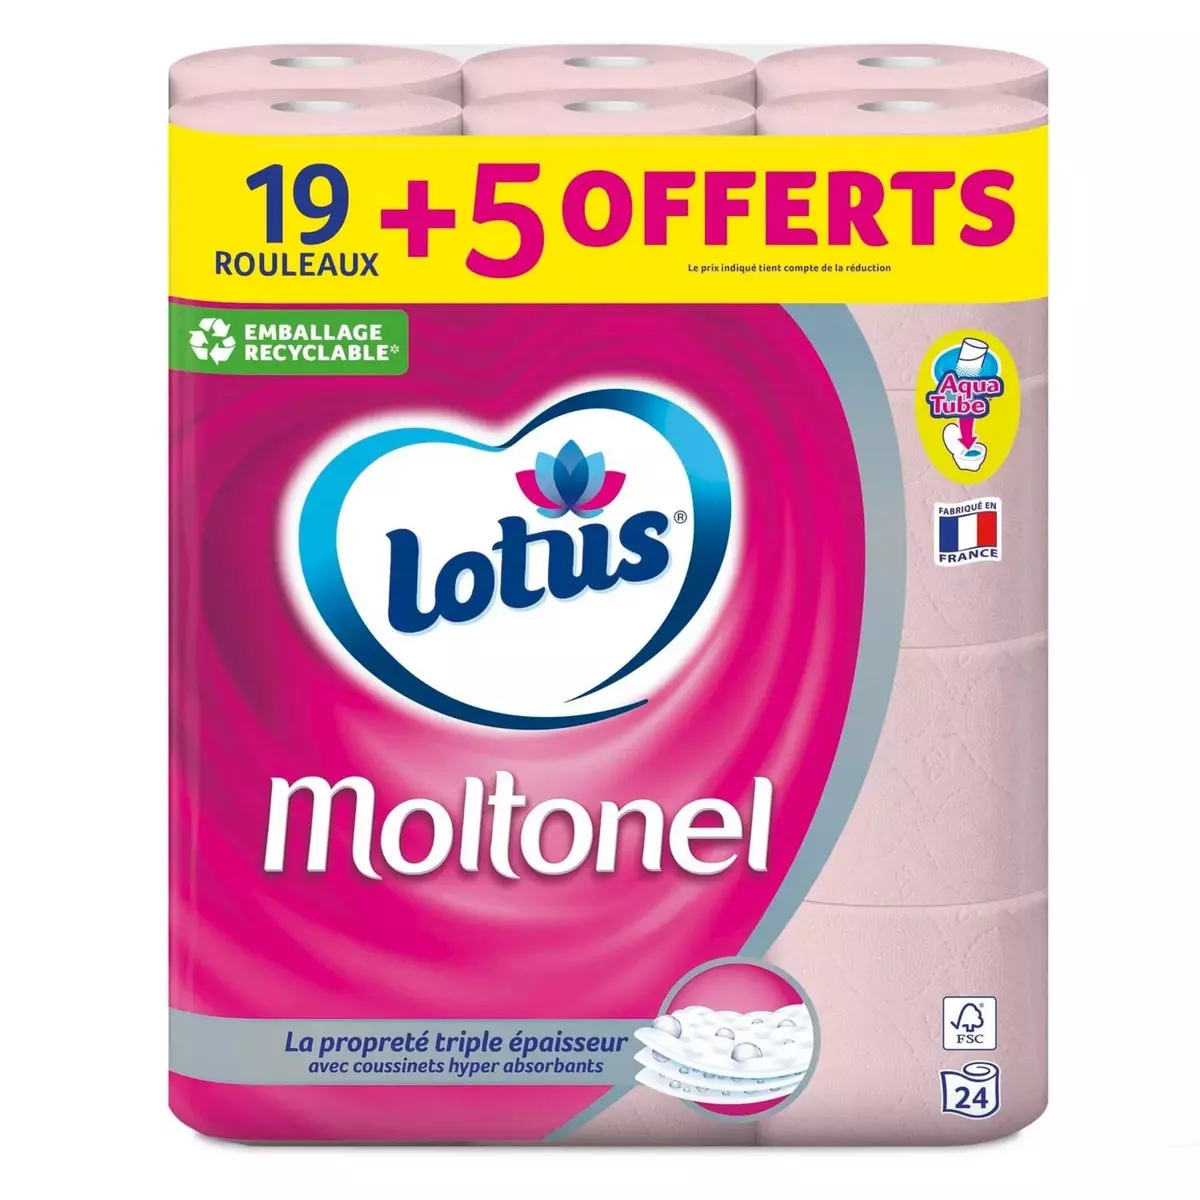 LOTUS Moltonel Rouleaux papiers toilette triple épaisseur aqua tube 19 rouleaux + 5 offerts